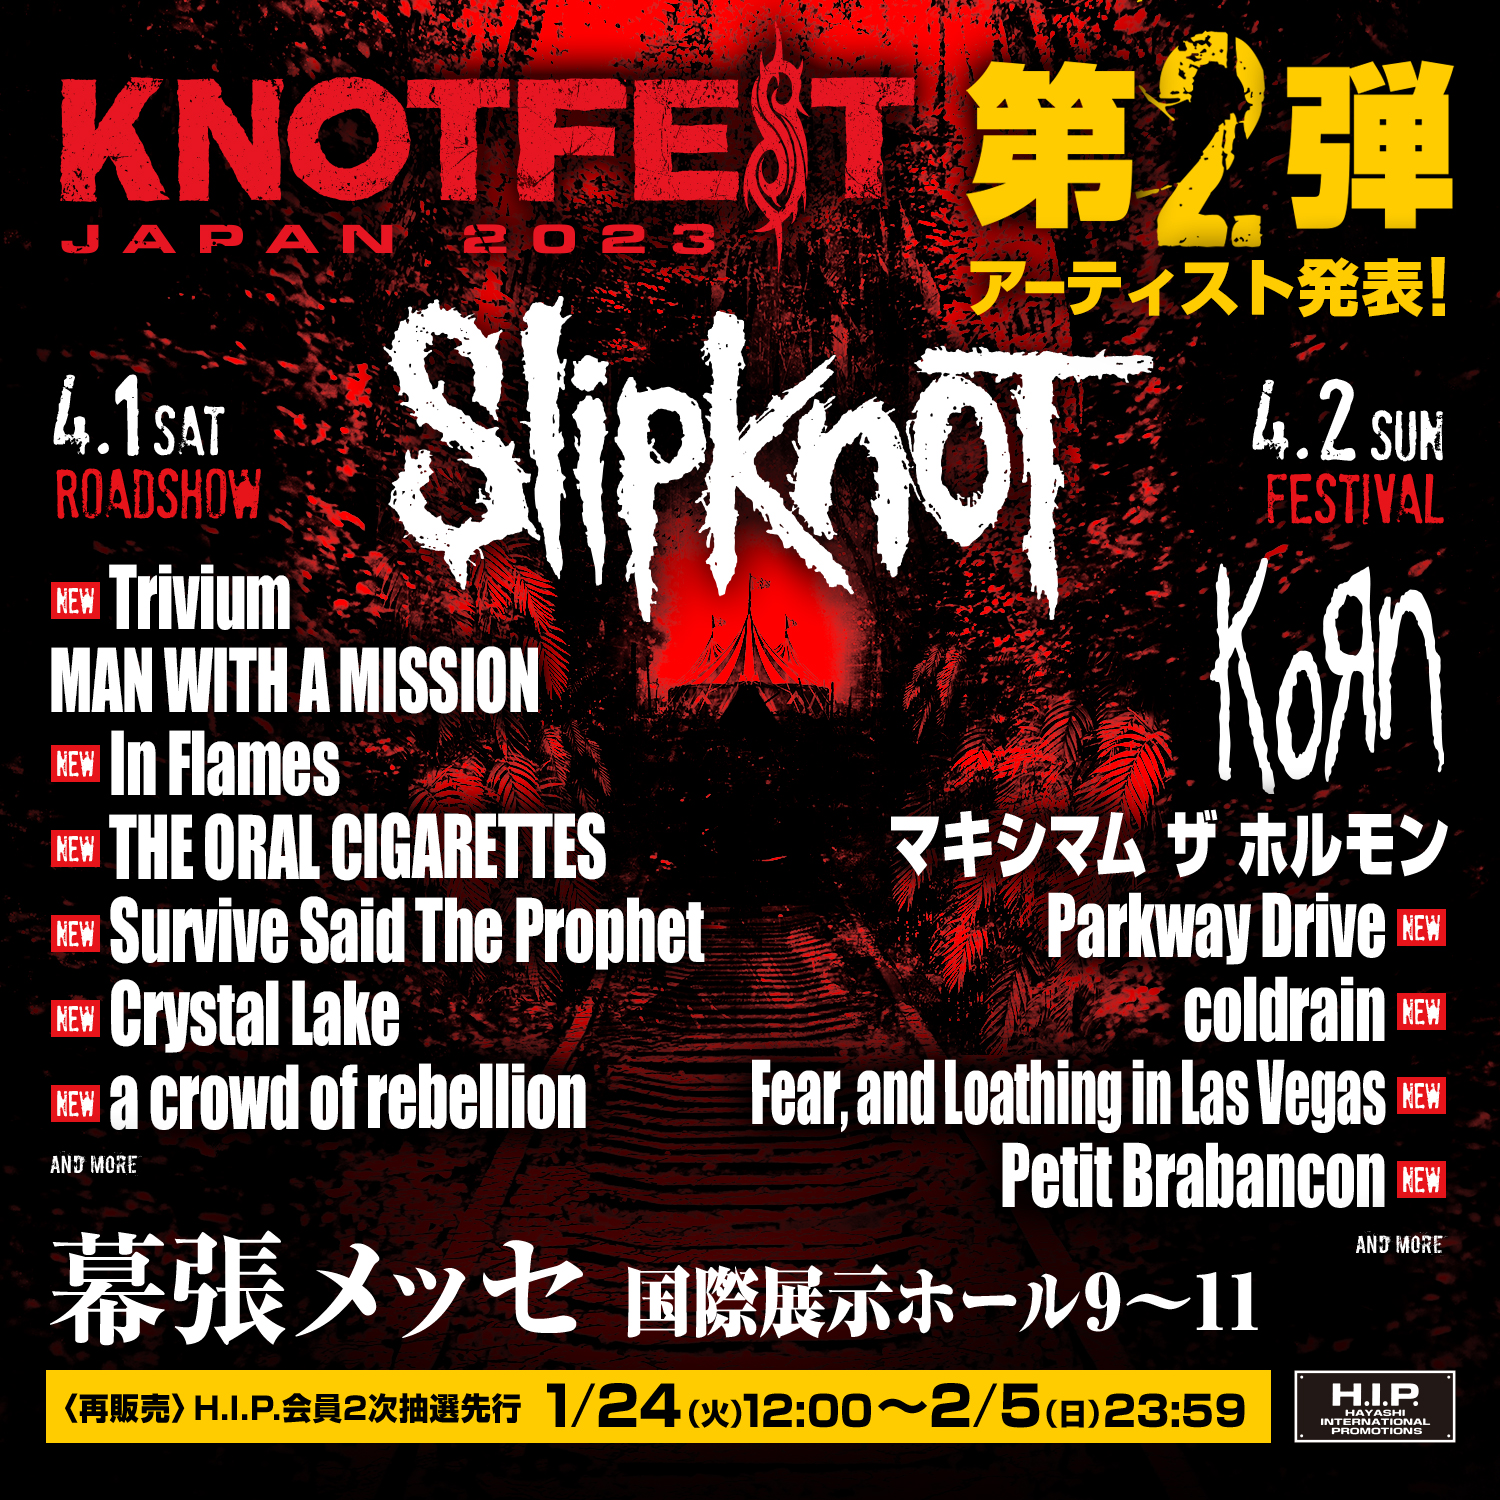 KNOTFEST JAPAN 2023 | Event | Metropolis Japan